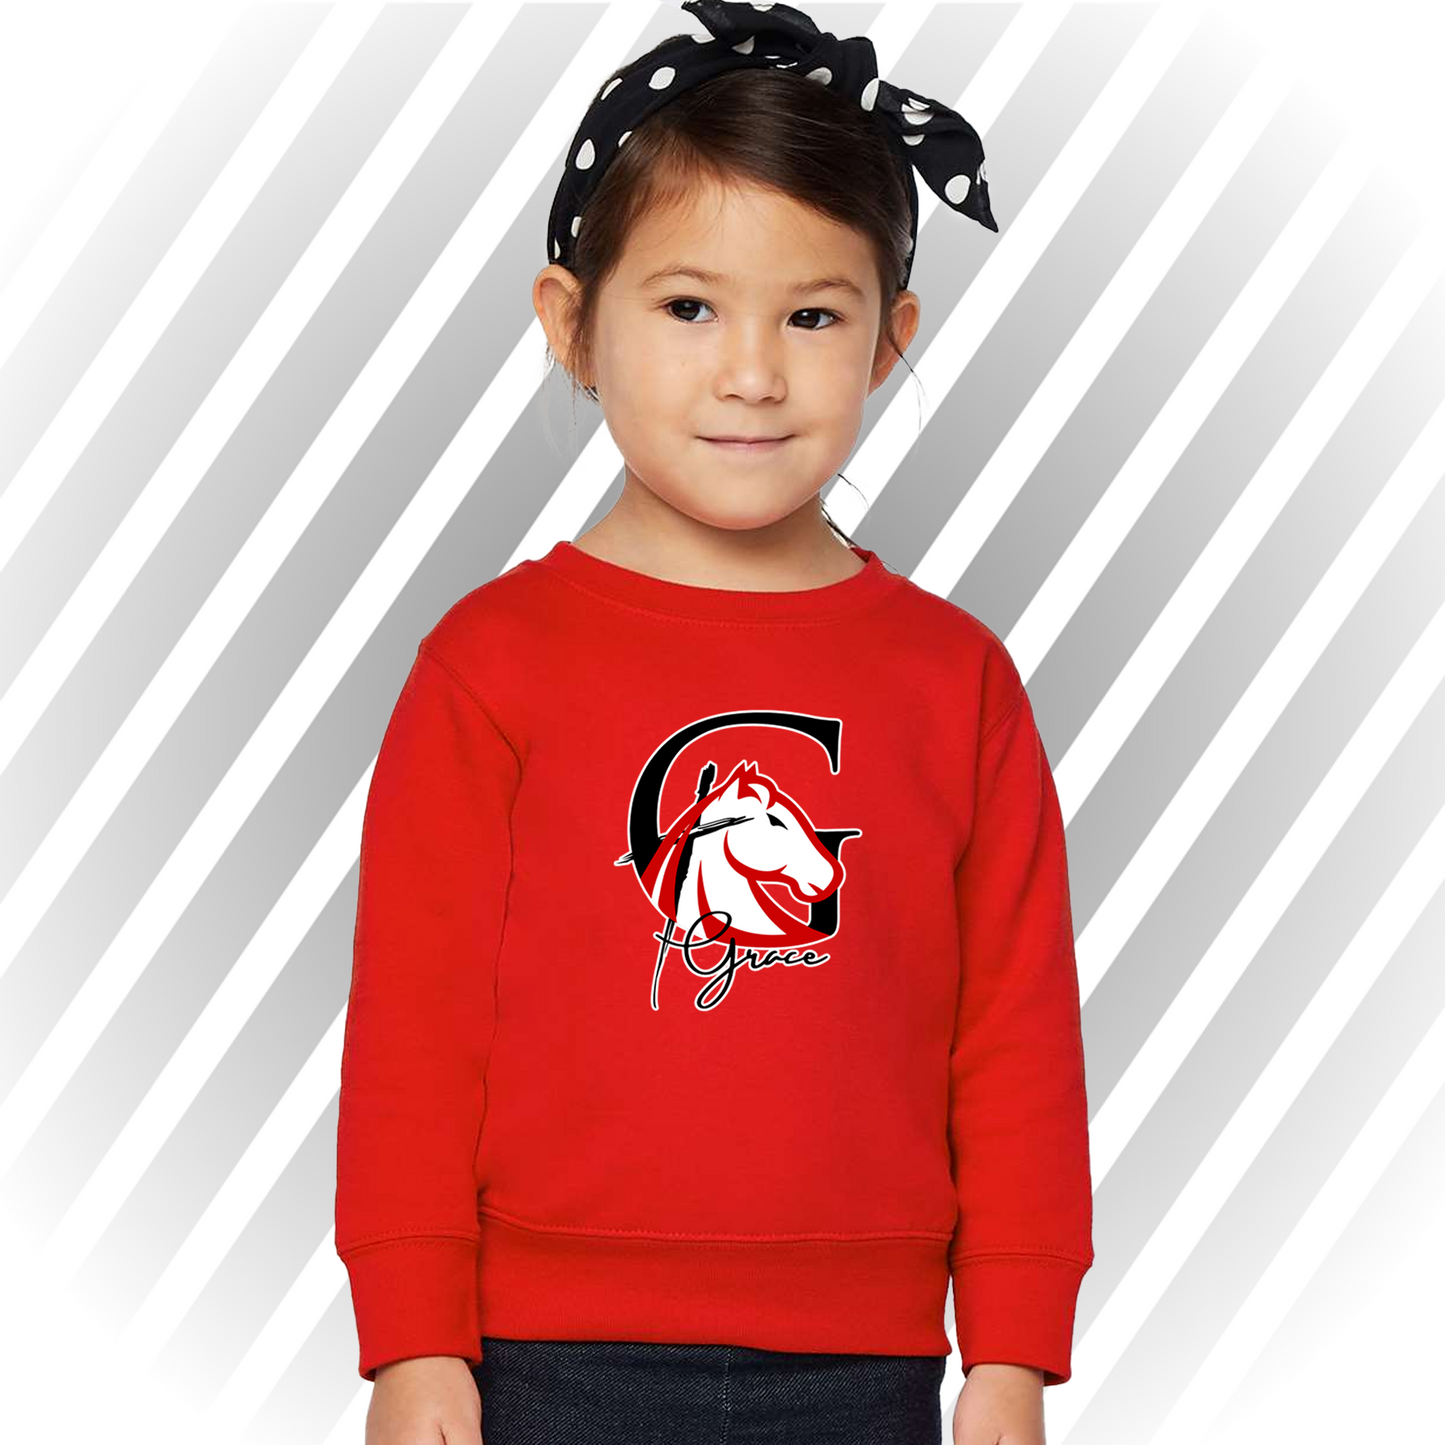 Grace Emblem - Toddler Crewneck Sweater